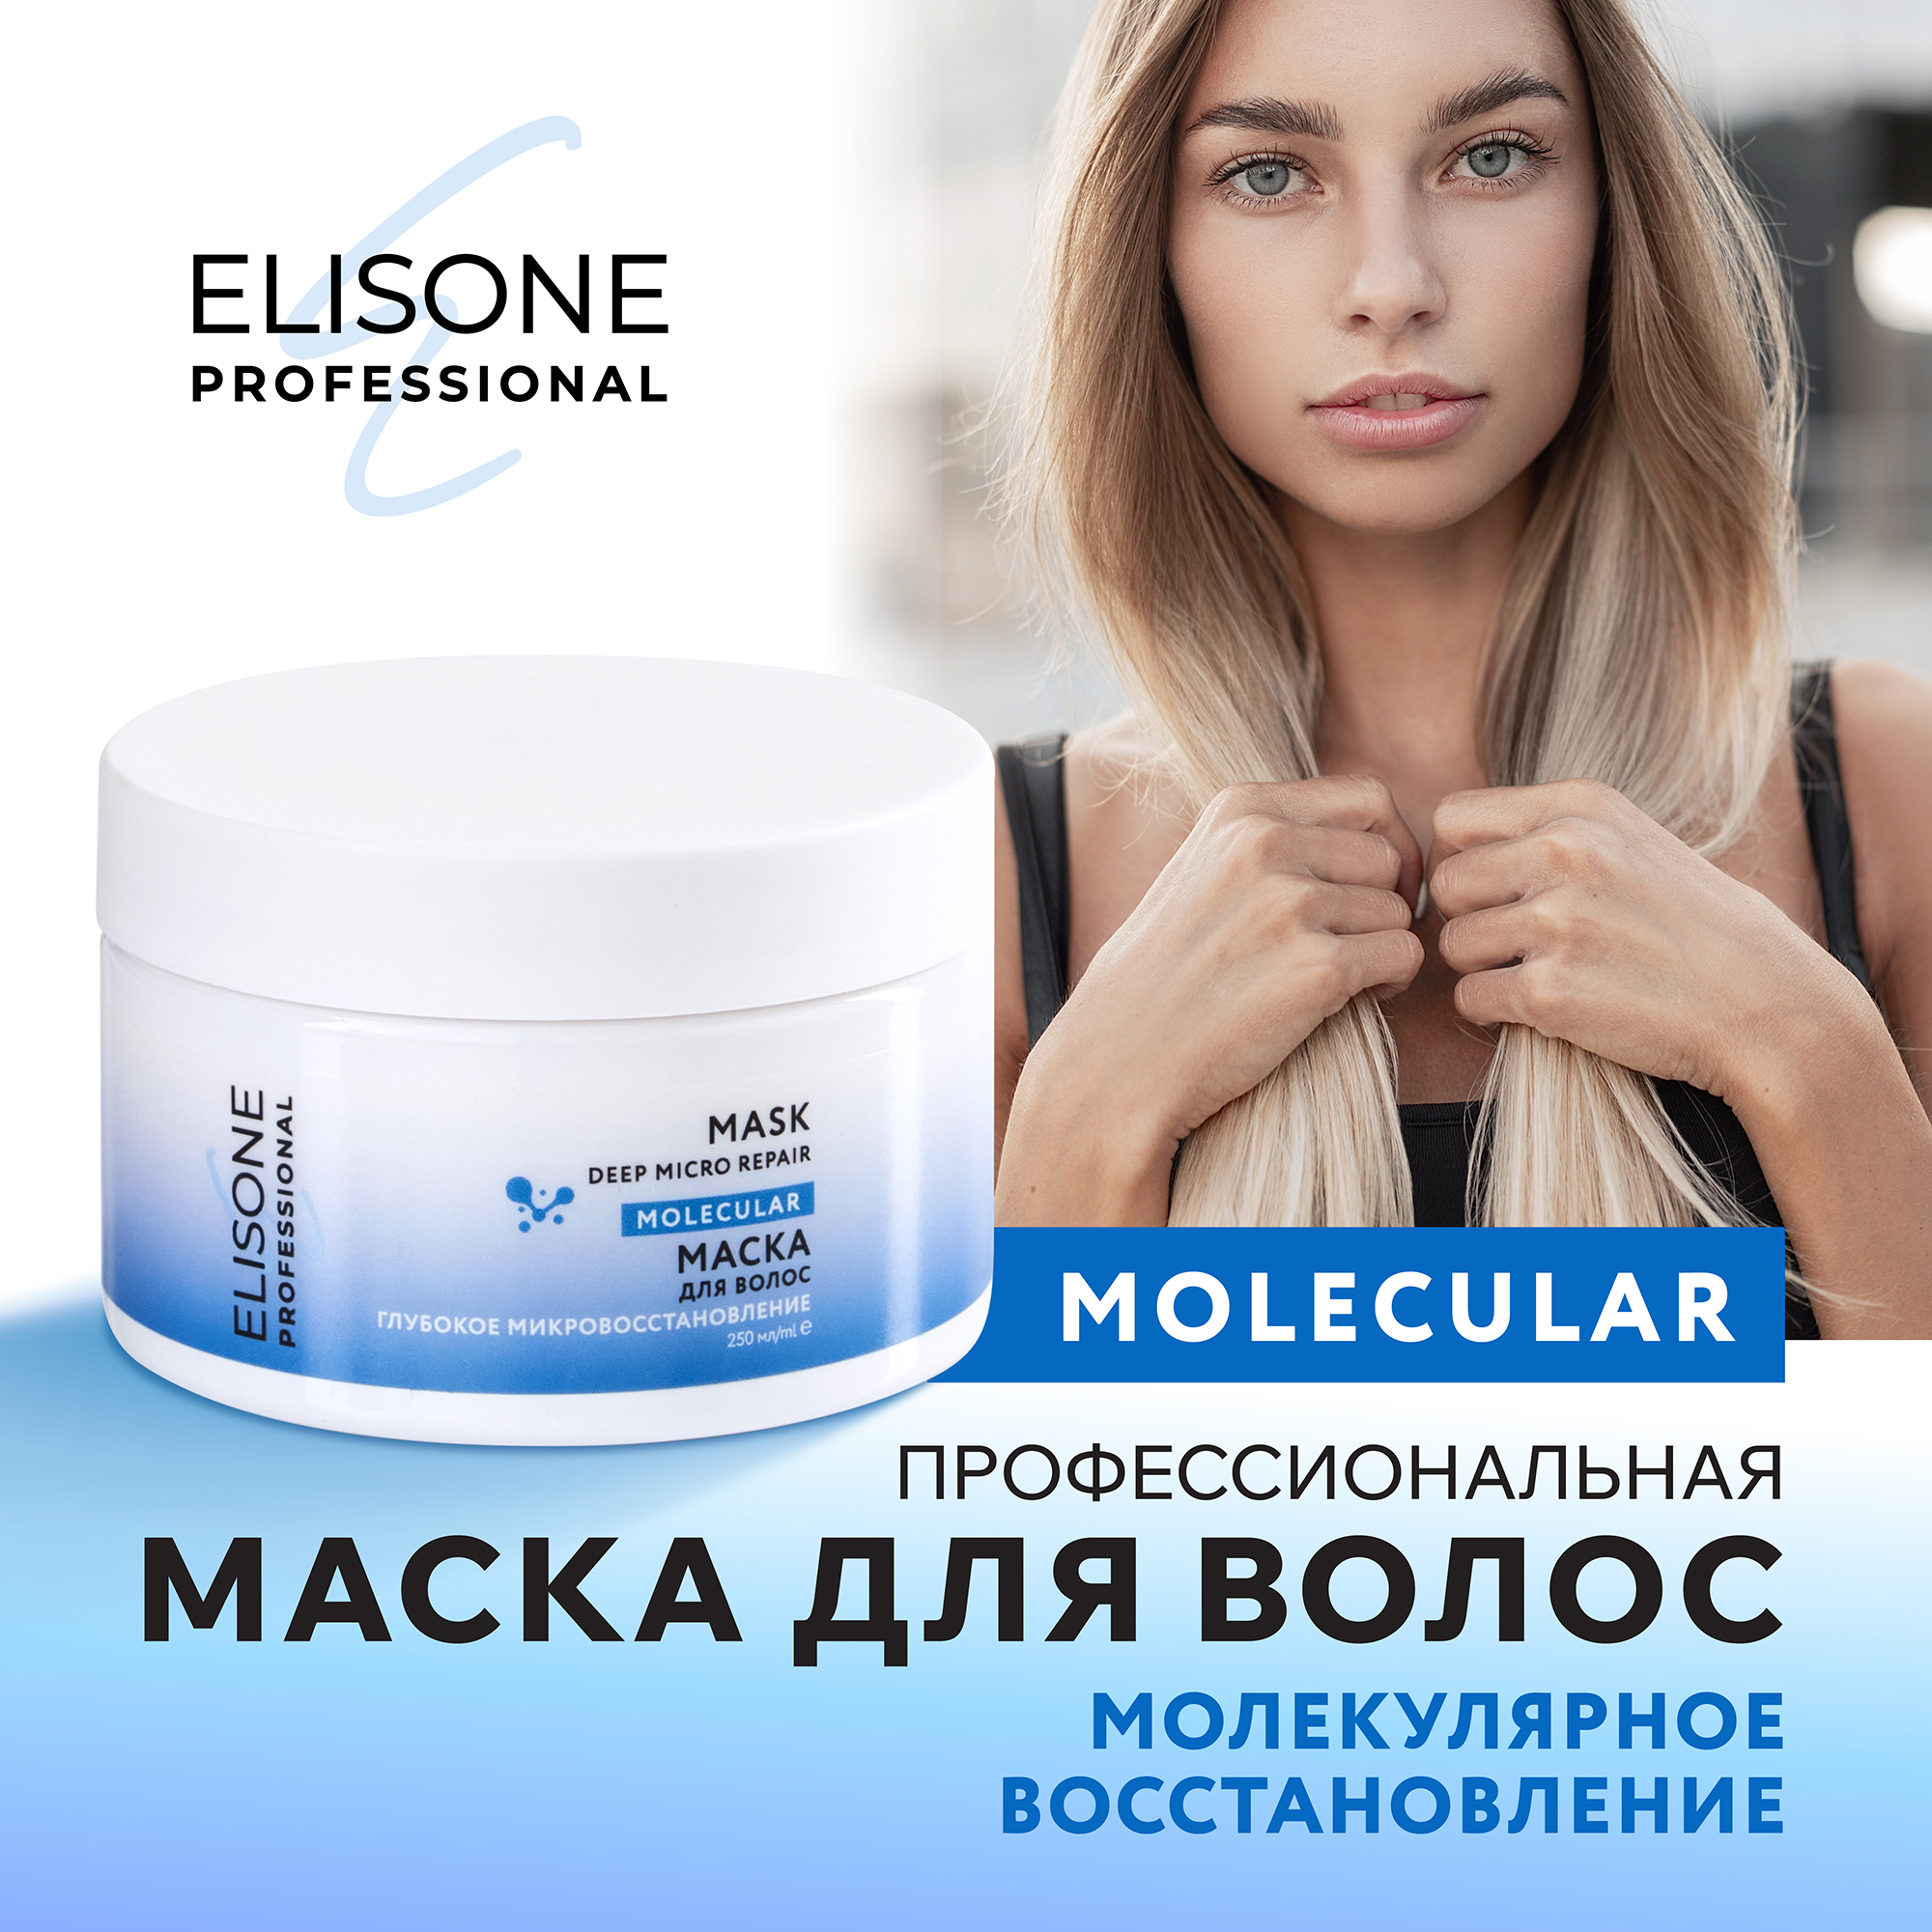 Маска для волос Elisone Professional Molecular глубокое микровосстановление 250 мл